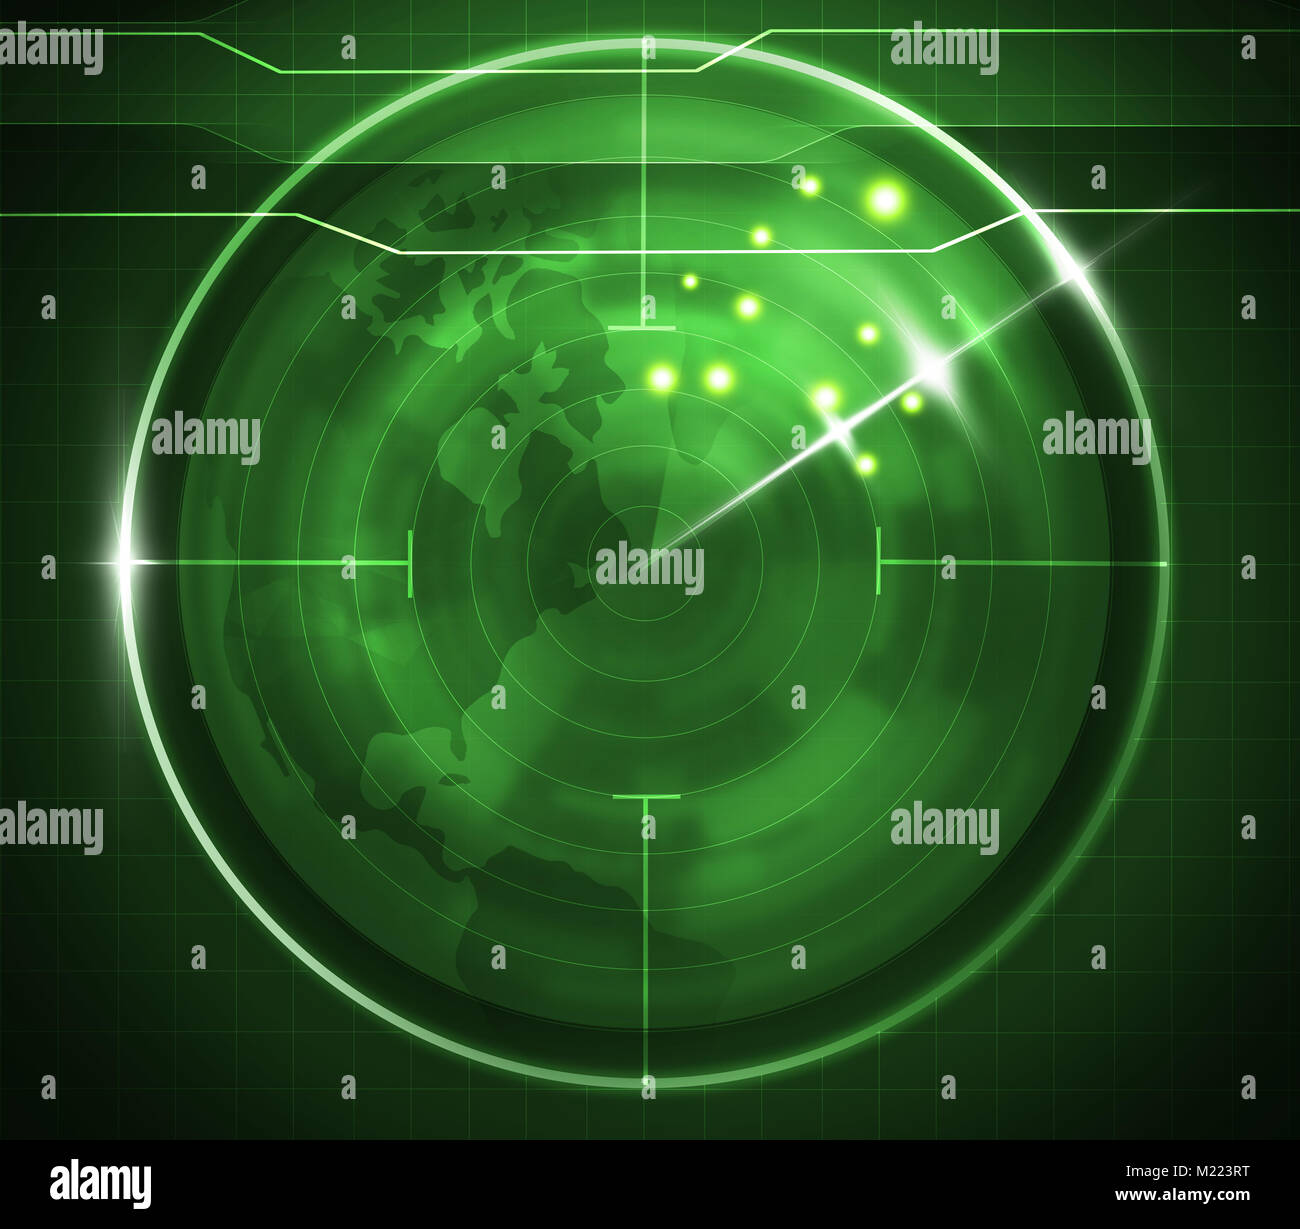 Ilustración de pantalla de vigilancia radar verde Foto de stock